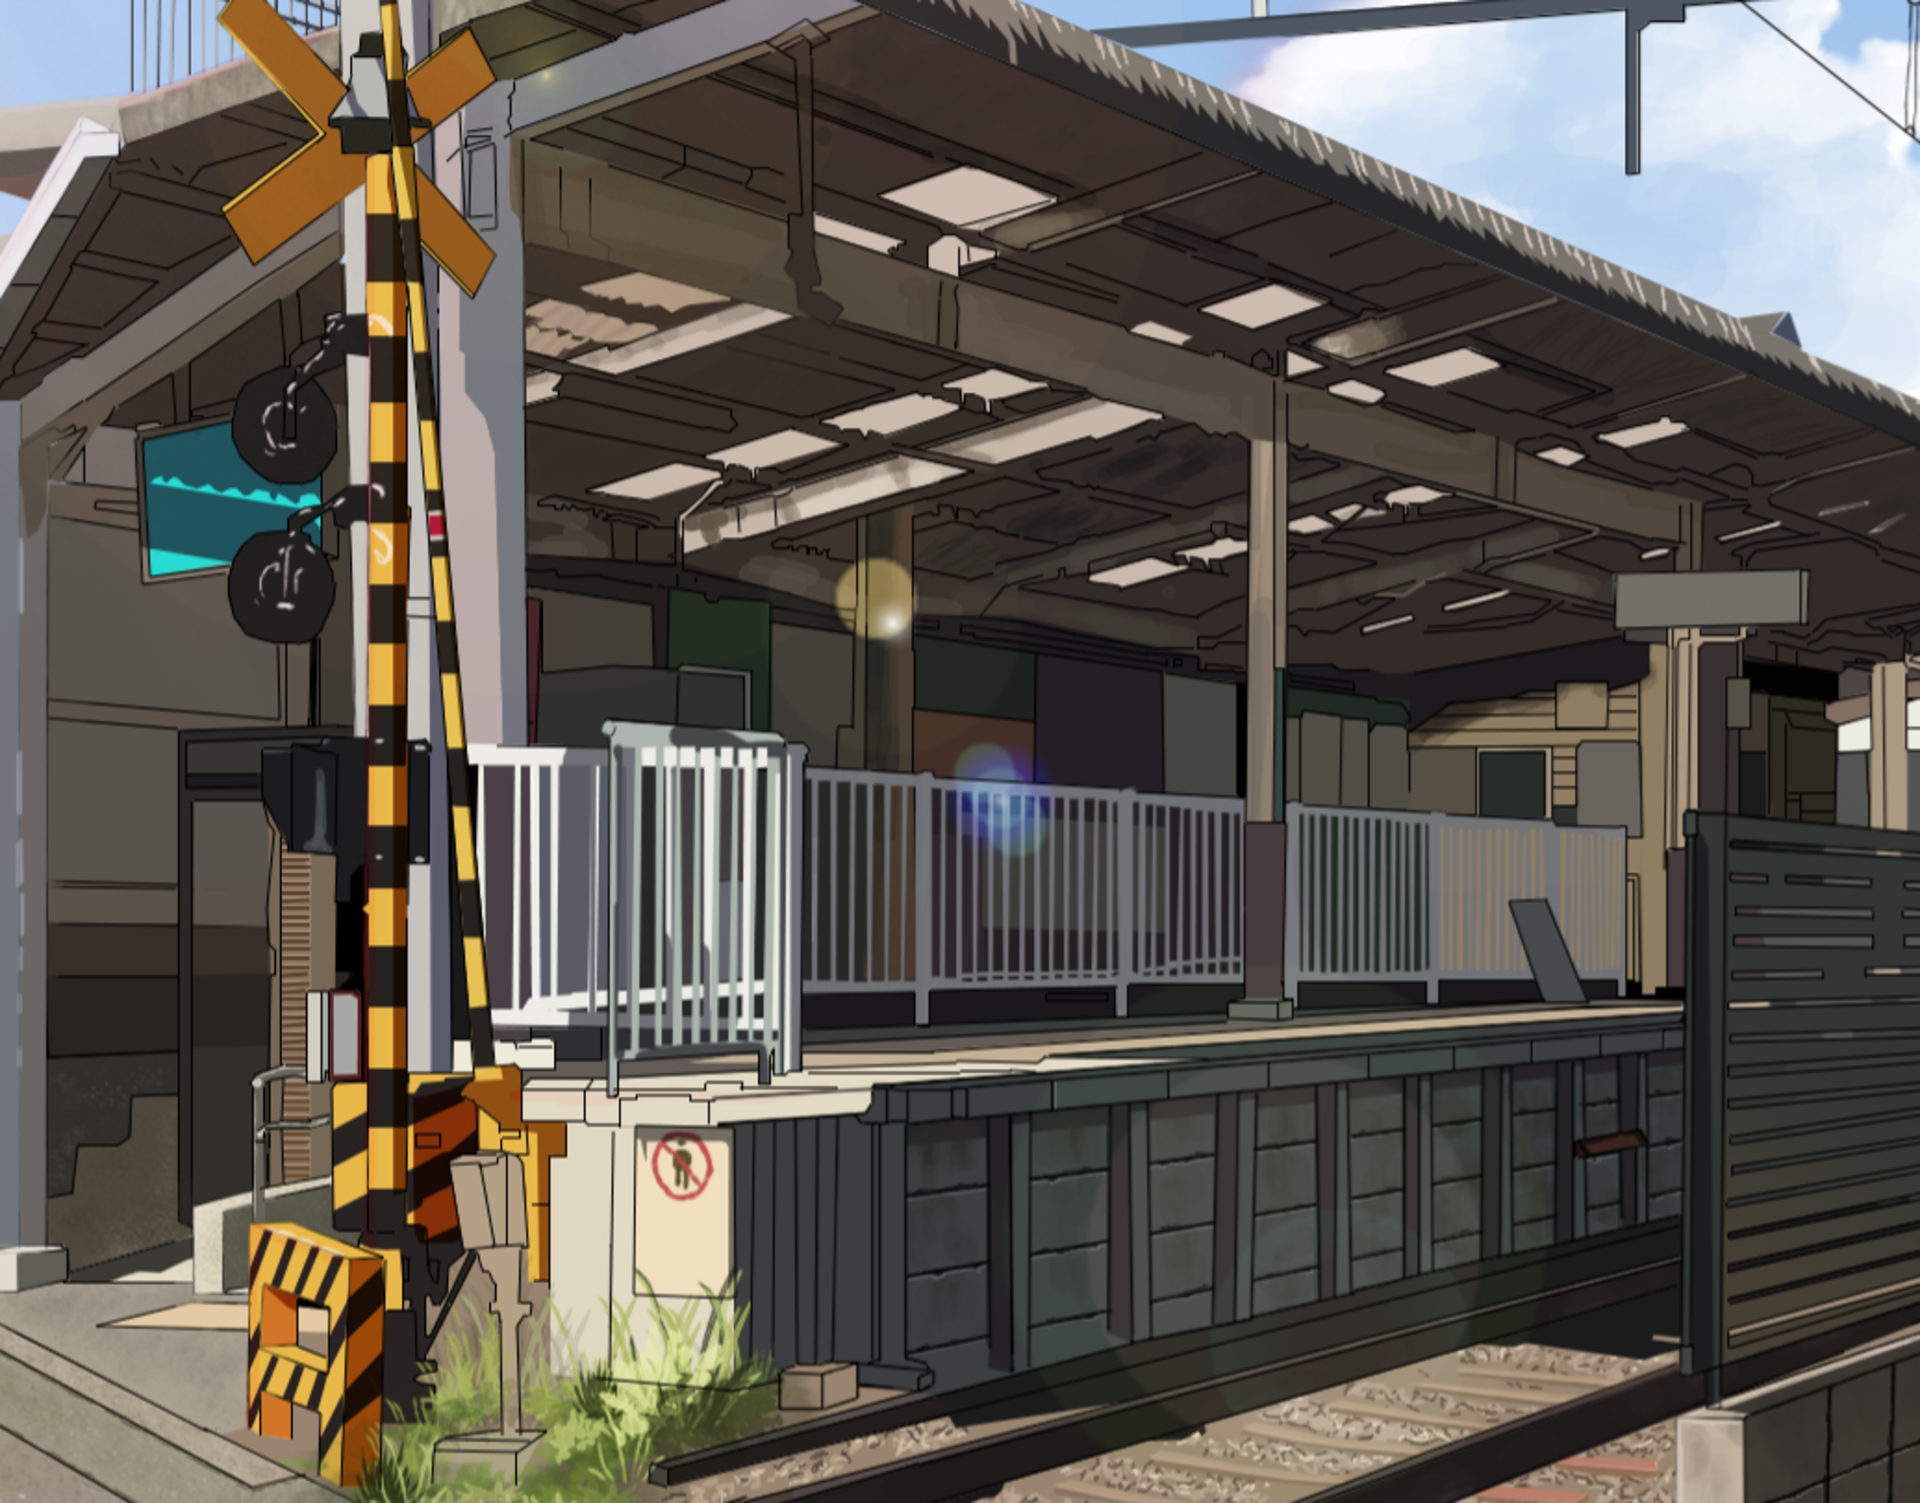 Railroad Train Station 1920x1503